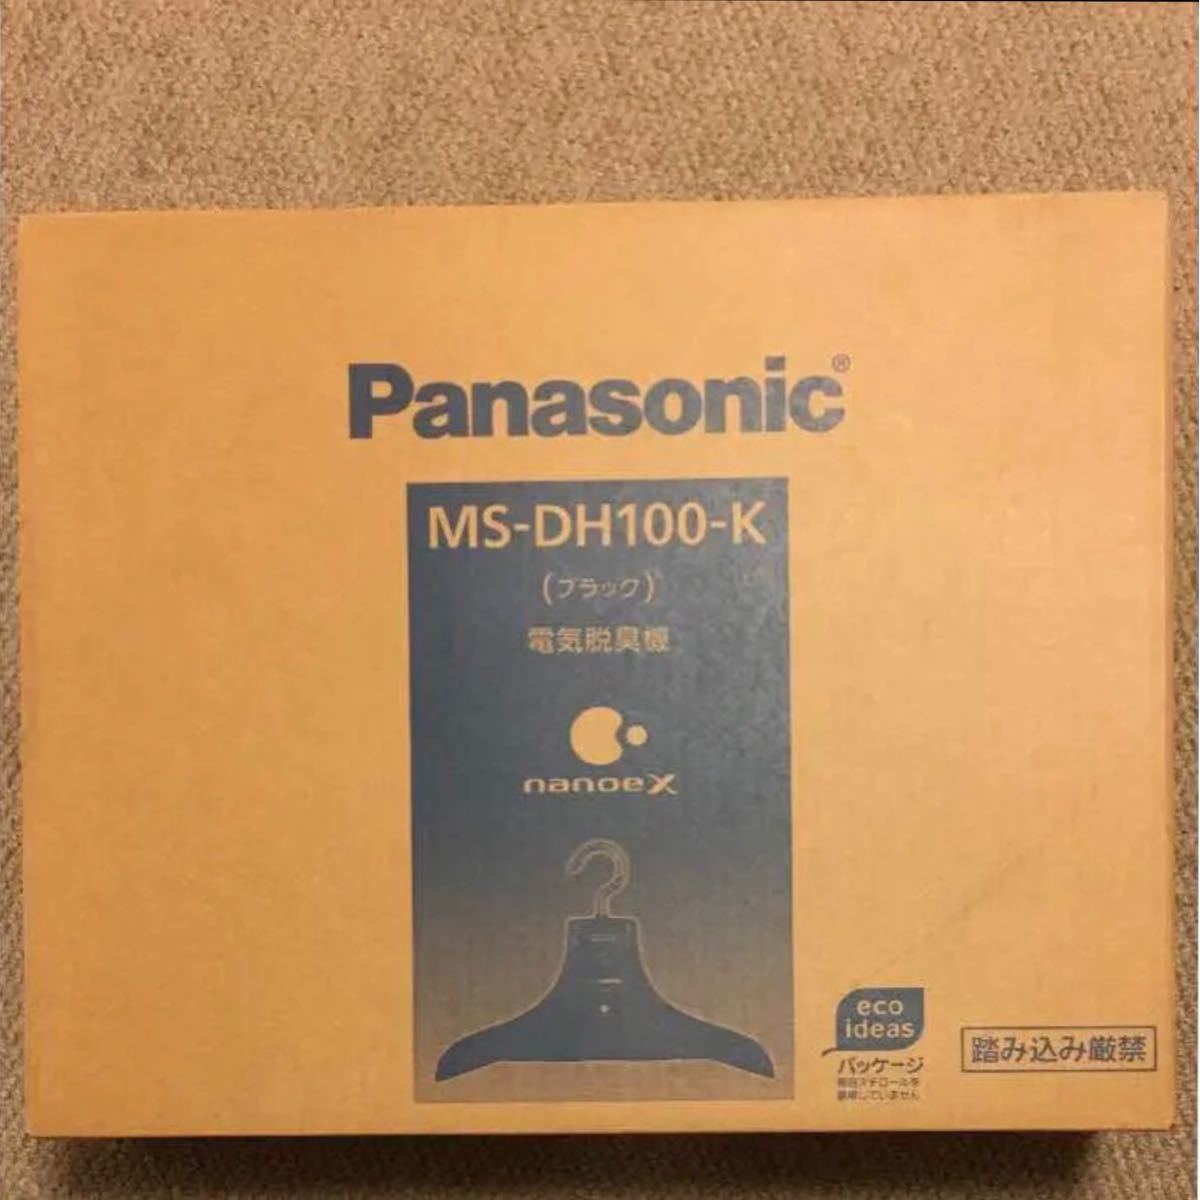 Panasonic 脱臭ハンガー 消臭ハンガー 脱臭機 パナソニック MS-DH100 ブラック ナノイー